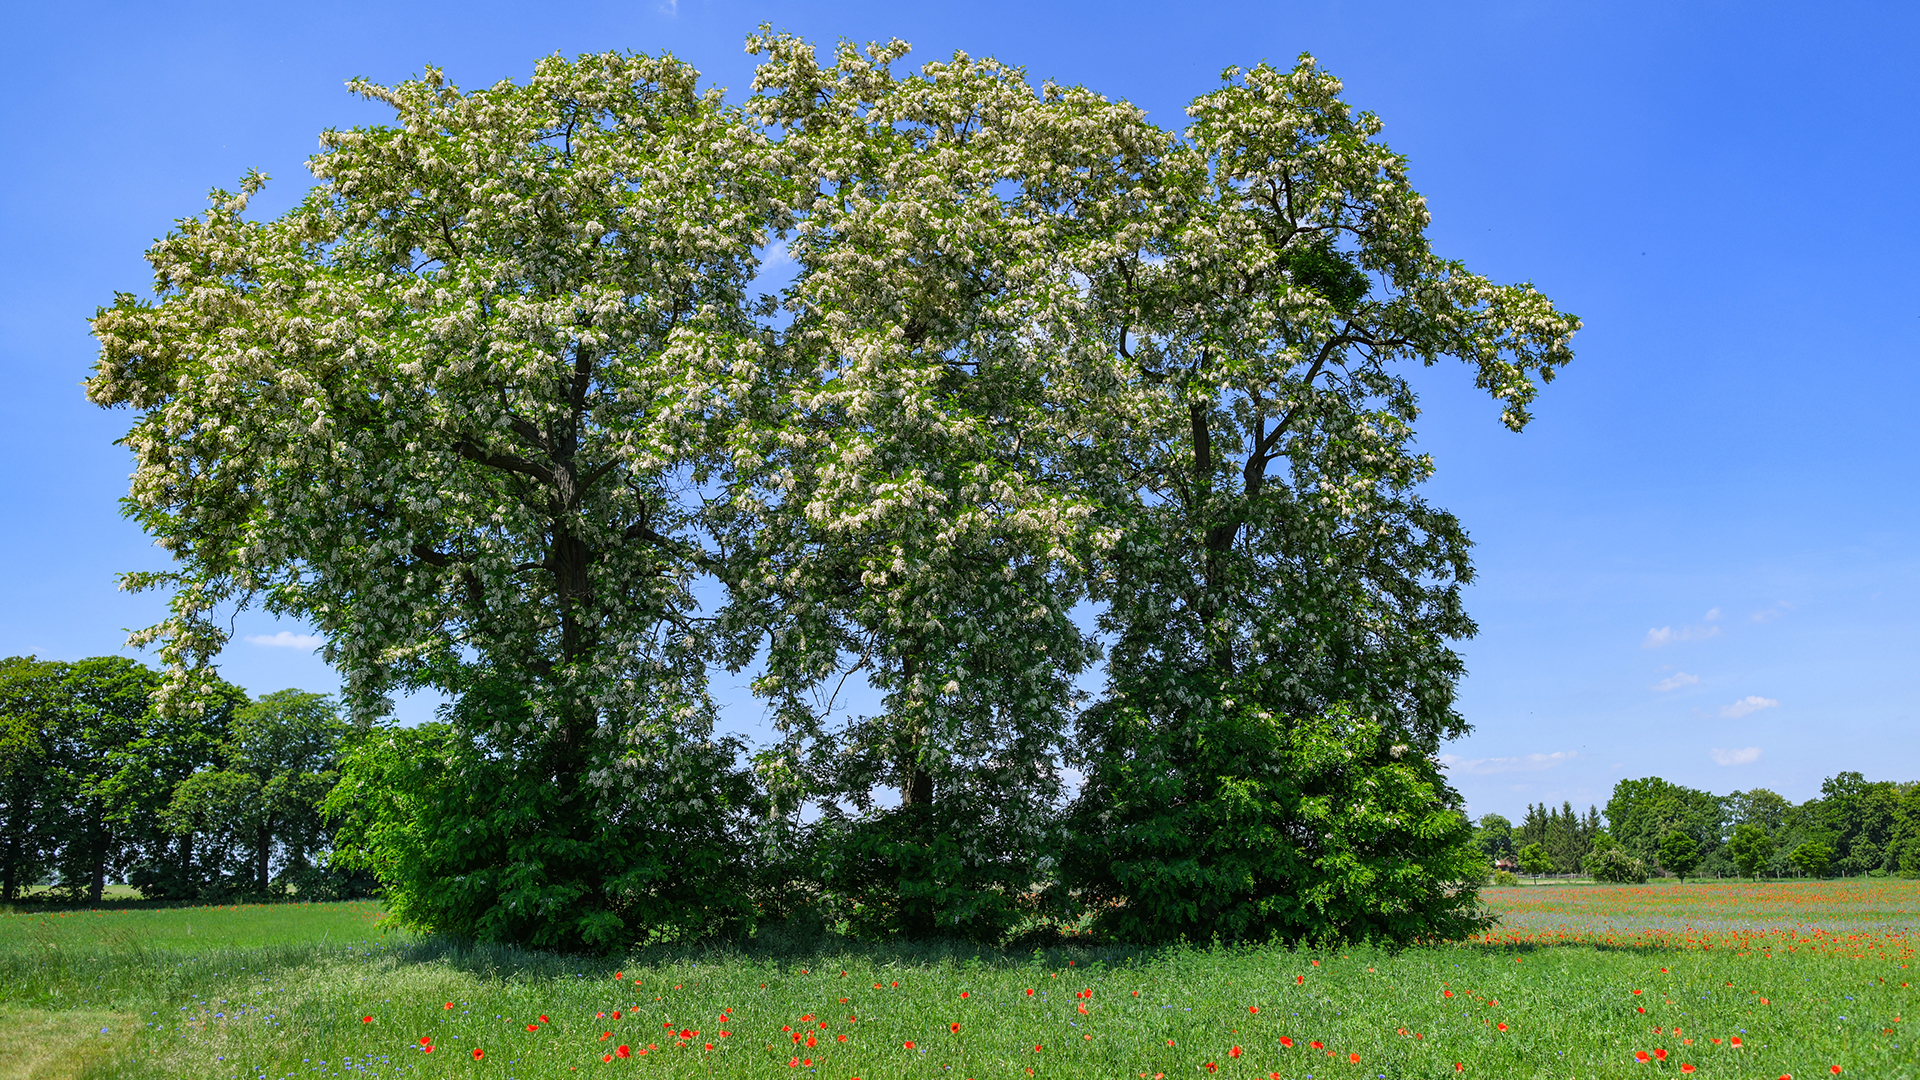 Voller weißer Blüten sind Bäume der Gewöhnlichen Robinie (Robinia pseudoacacia) | picture alliance/dpa